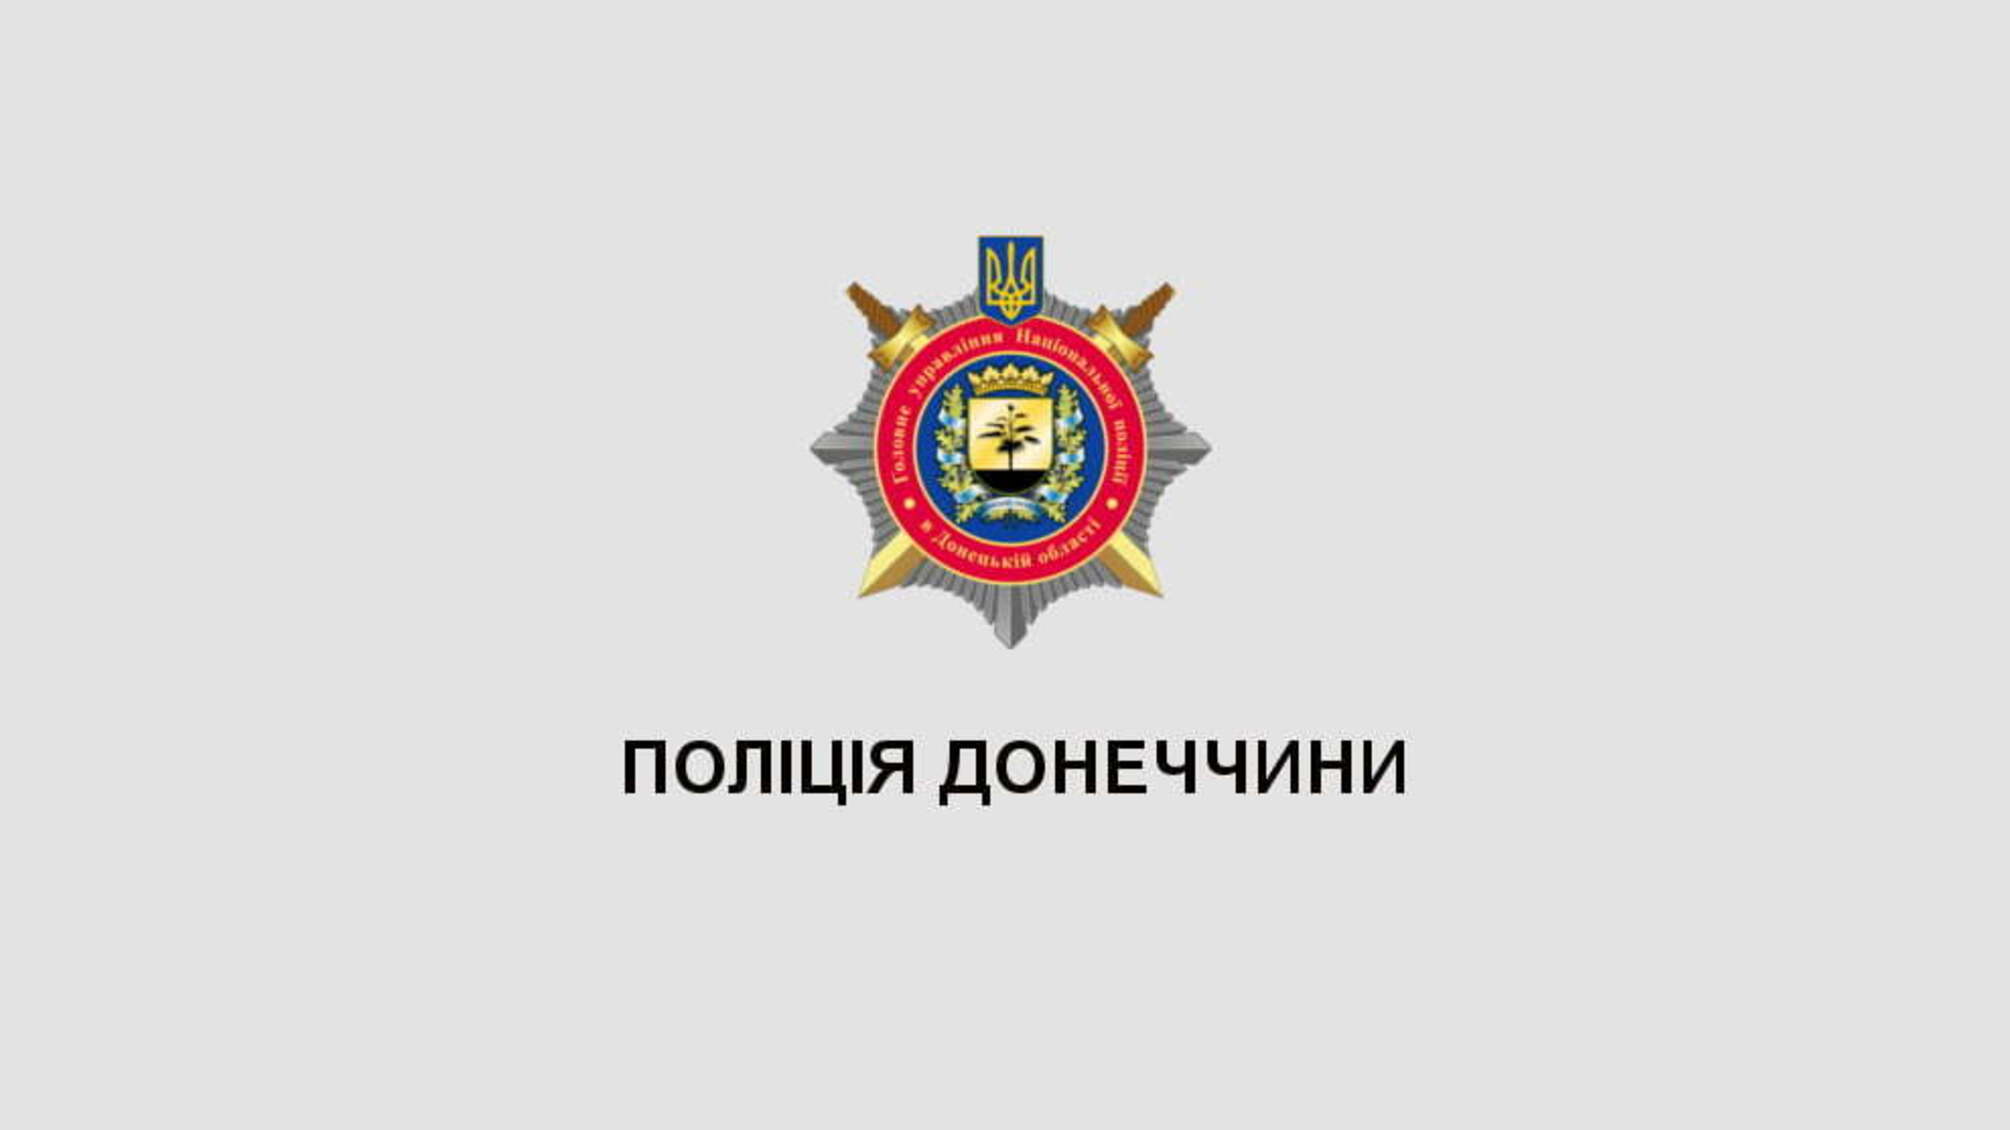 Поліція та провідні виші створили на Донеччині колаборацію науки та практики для підвищення безпеки